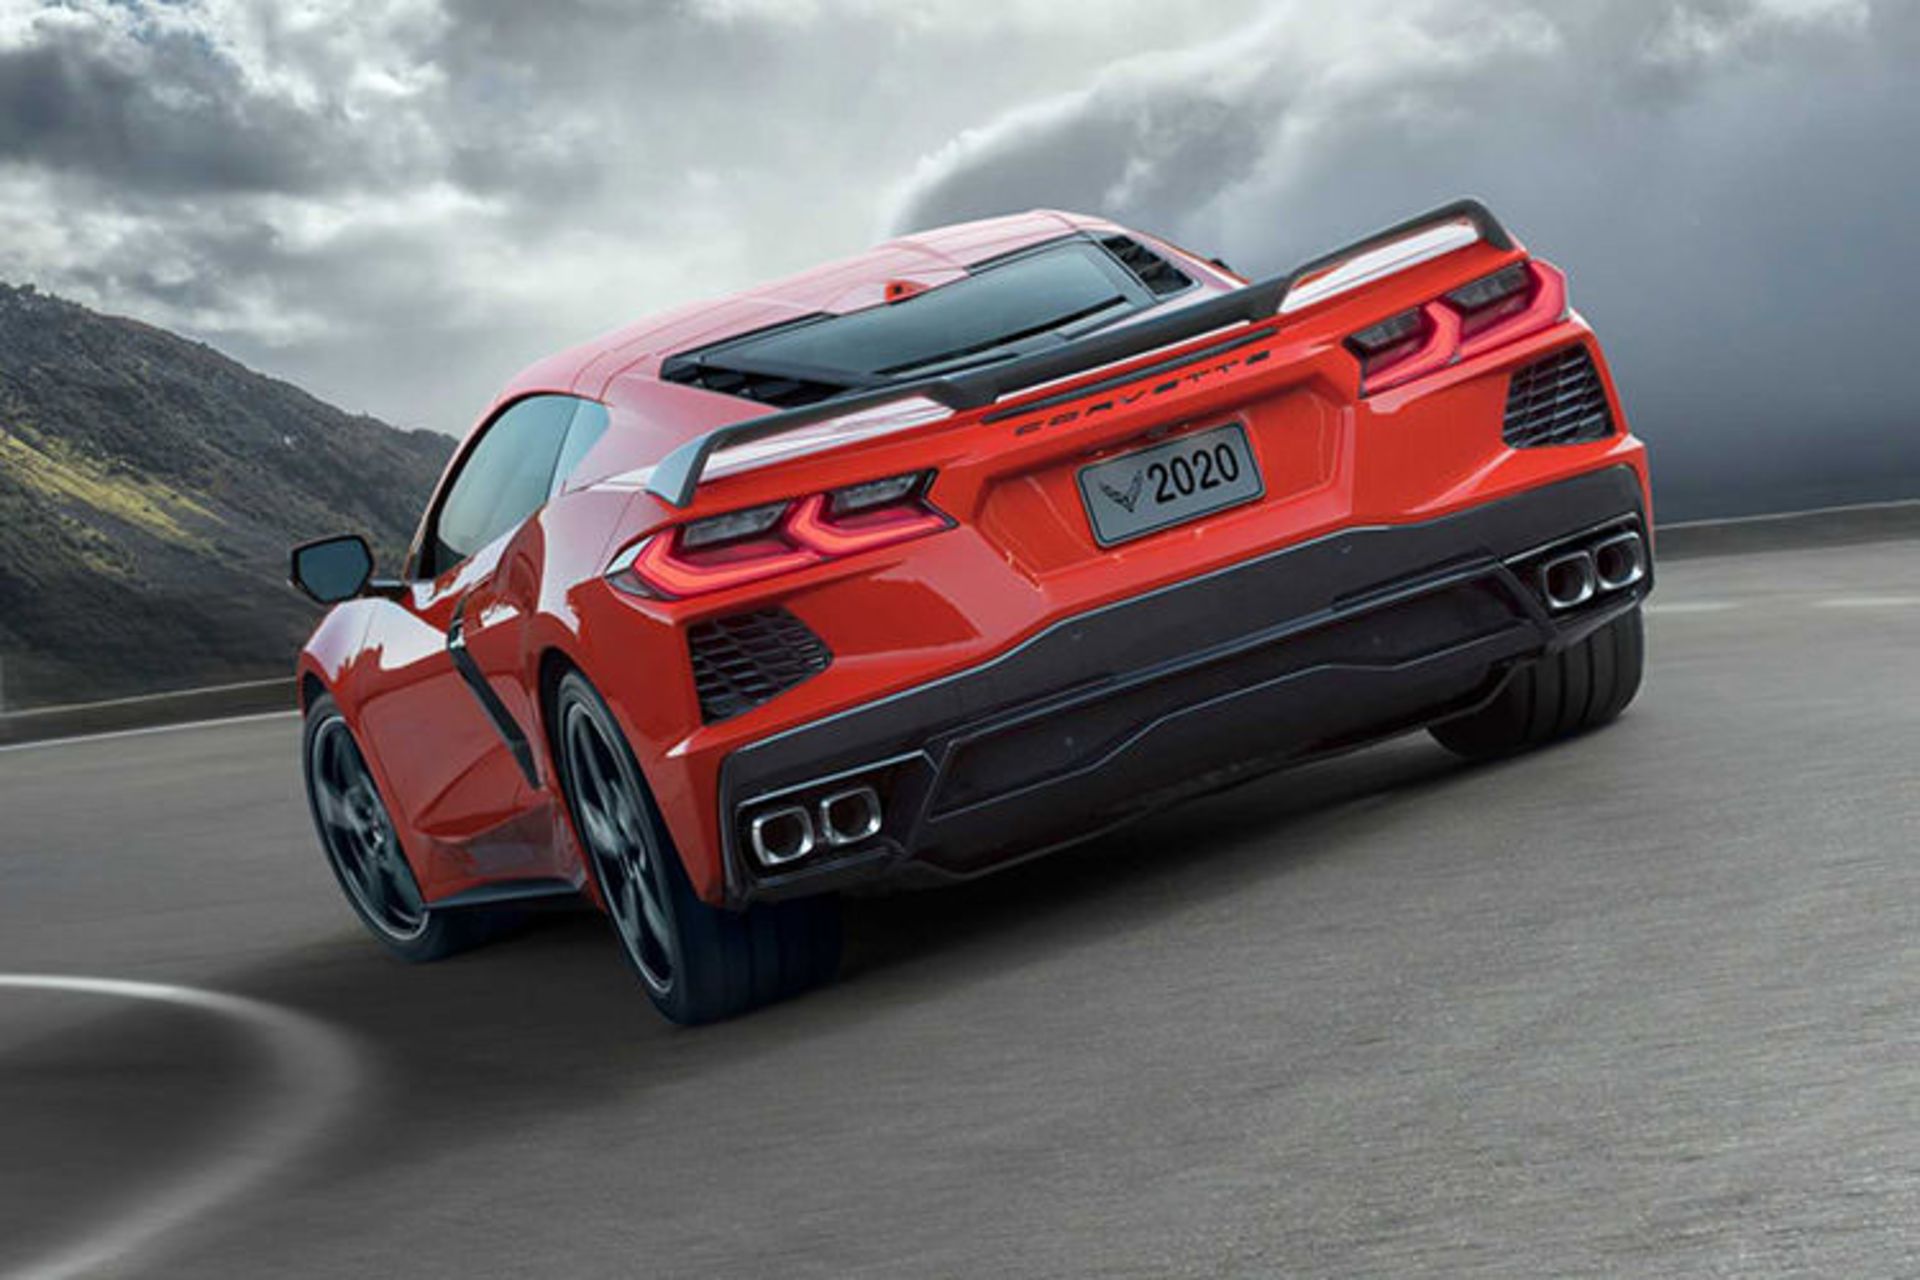 مرجع متخصصين ايران 2020 Chevrolet C8 Corvette / شورولت كوروت c8 استينگري 2020